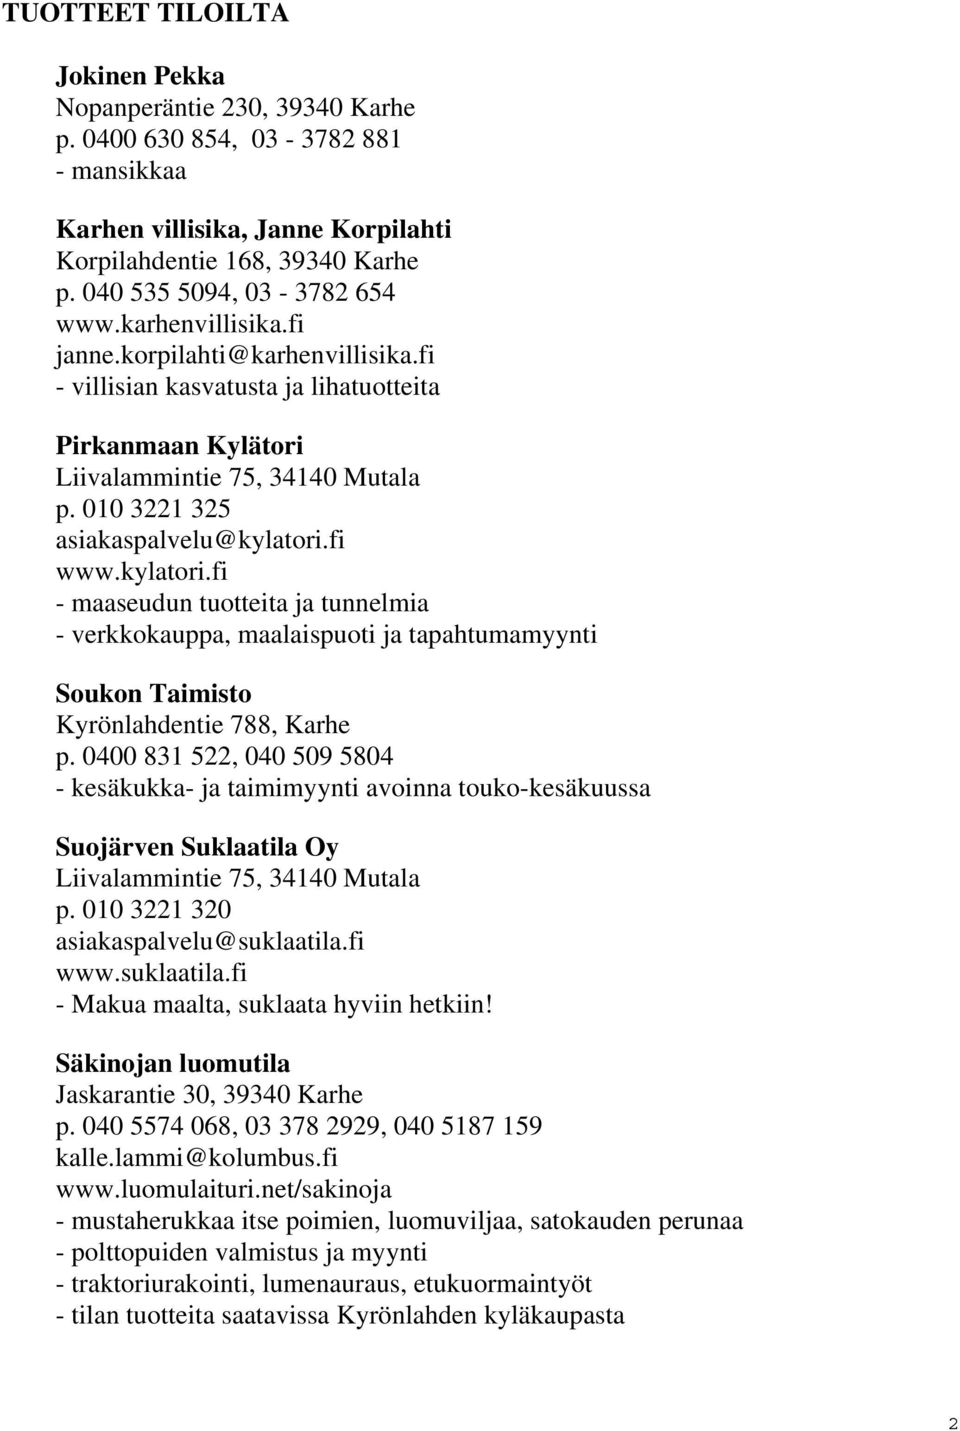 010 3221 325 asiakaspalvelu@kylatori.fi www.kylatori.fi - maaseudun tuotteita ja tunnelmia - verkkokauppa, maalaispuoti ja tapahtumamyynti Soukon Taimisto Kyrönlahdentie 788, Karhe p.